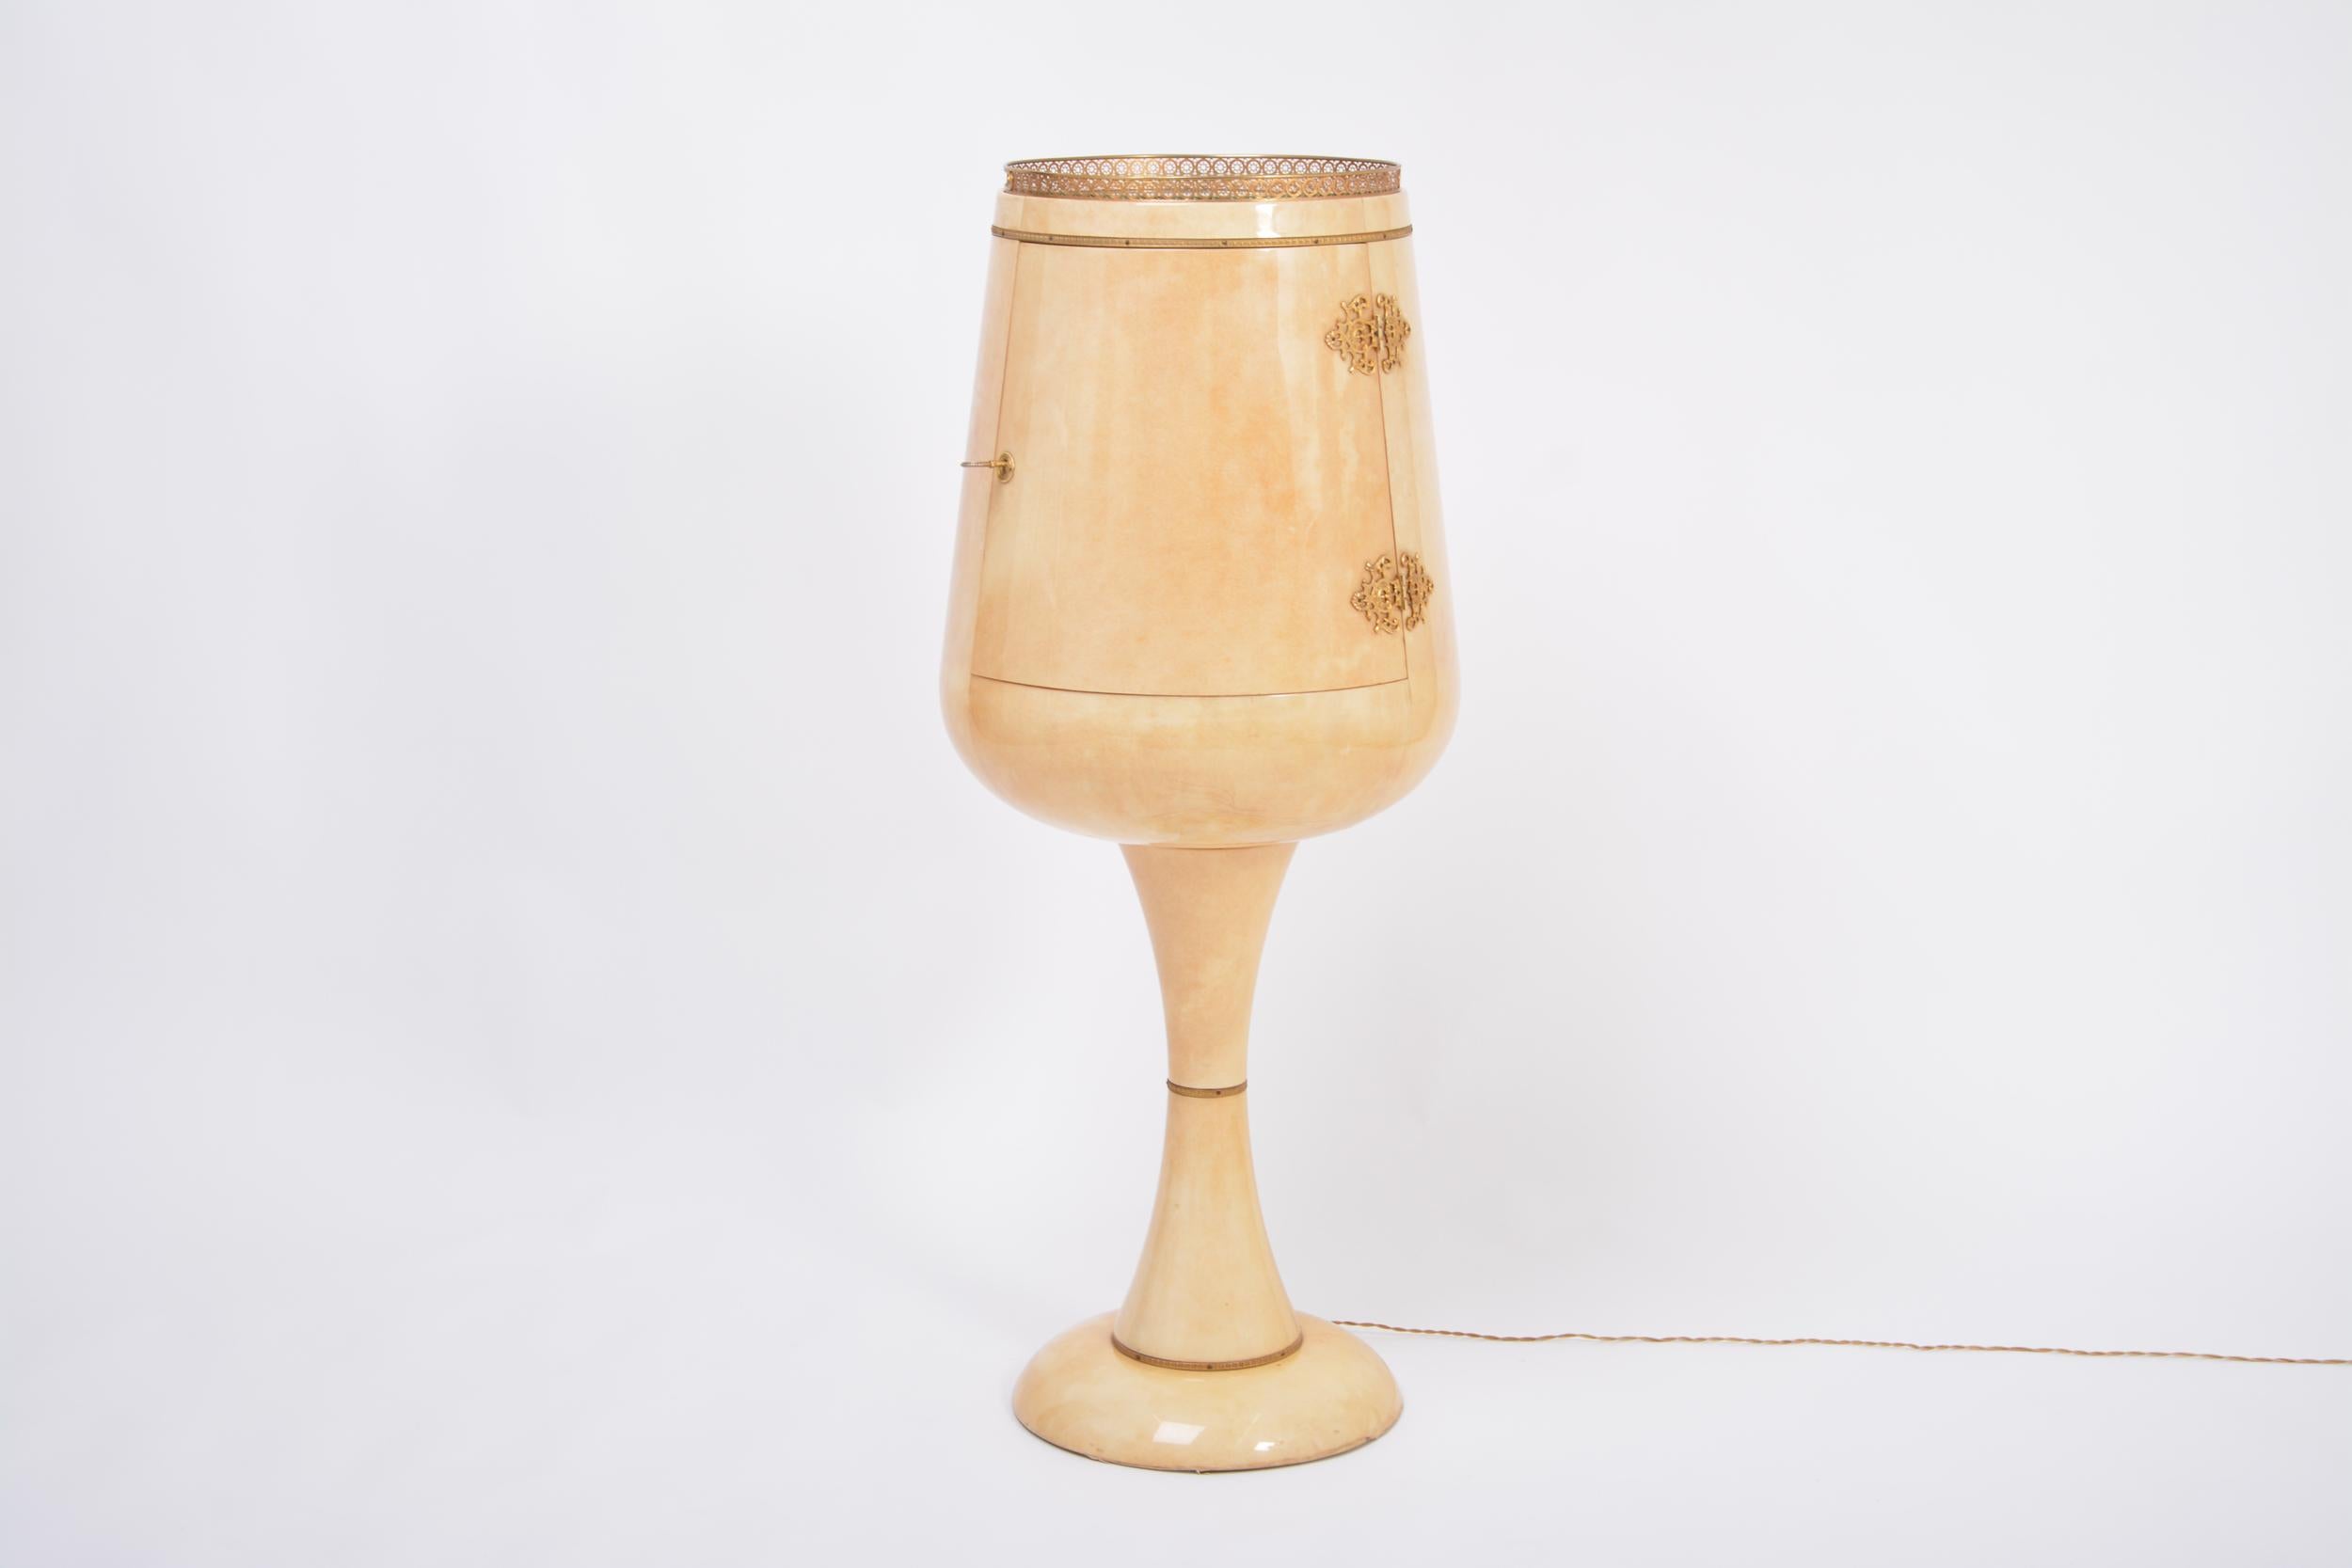 Wunderschöner Barschrank 'Calice' (Weinglas), entworfen und hergestellt von Aldo Tura in Italien, wahrscheinlich in den 1950er Jahren. Die Bar wird komplett mit dem originalen Serviertablett und Eiskübel geliefert. Wenn sie geöffnet ist, wird die